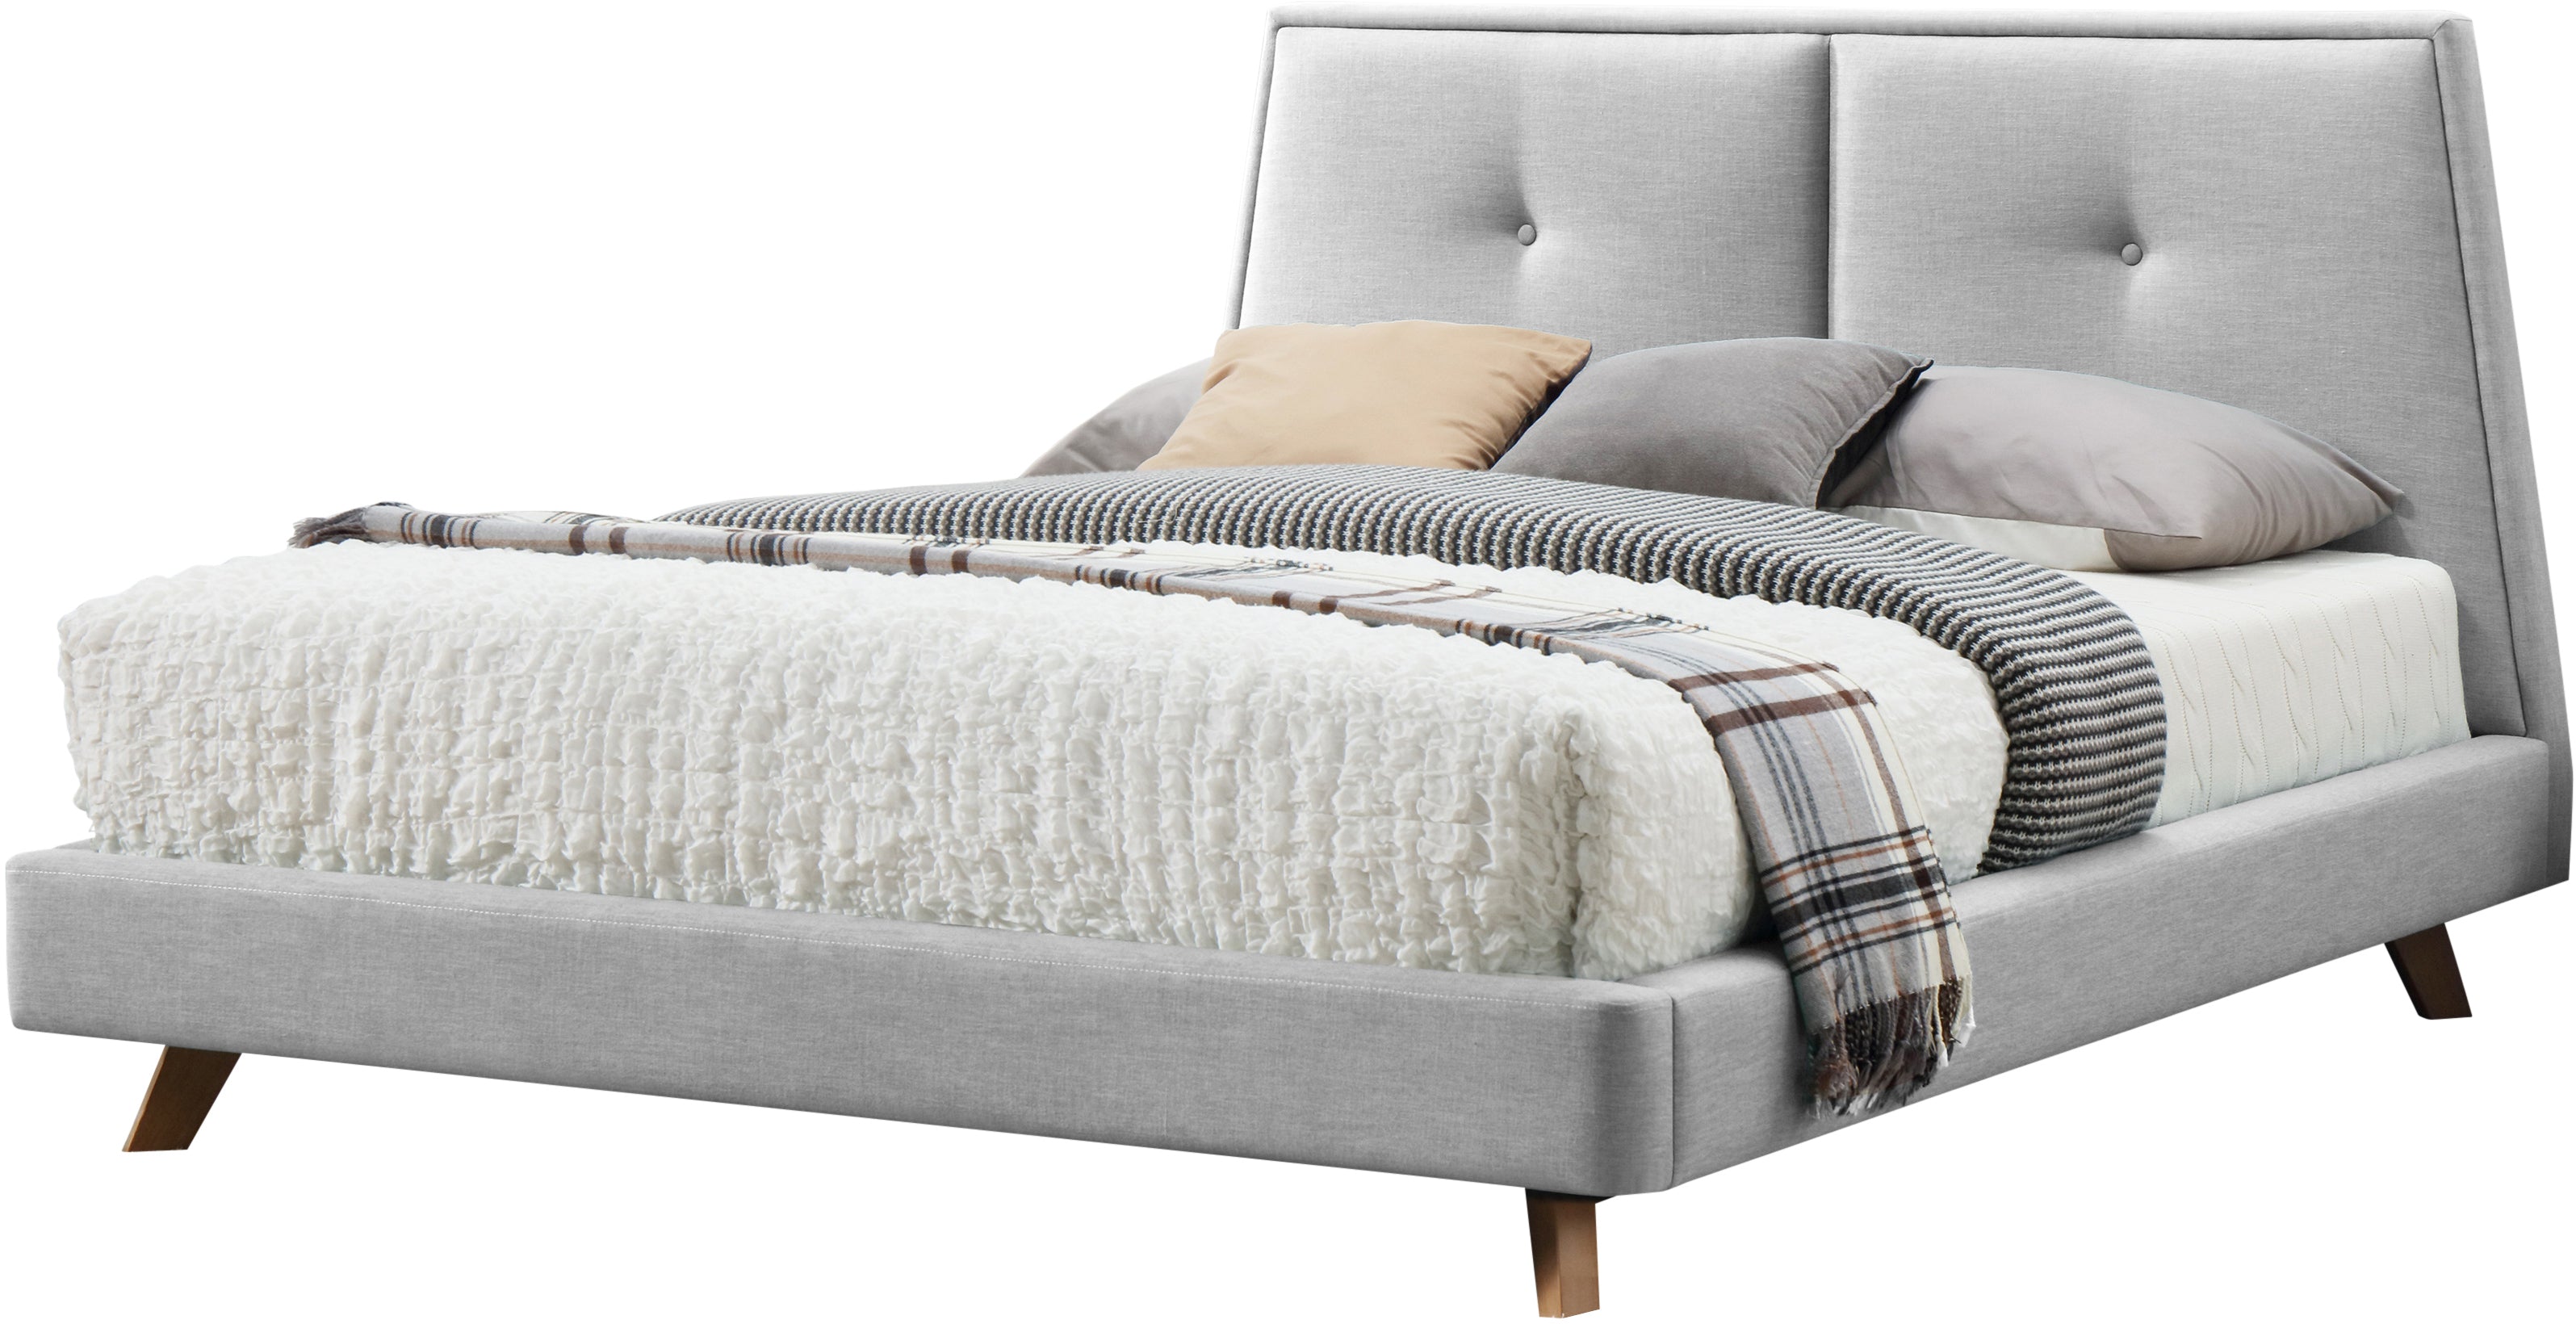 Kenzie Upholstered Platform Bed - Light Grey